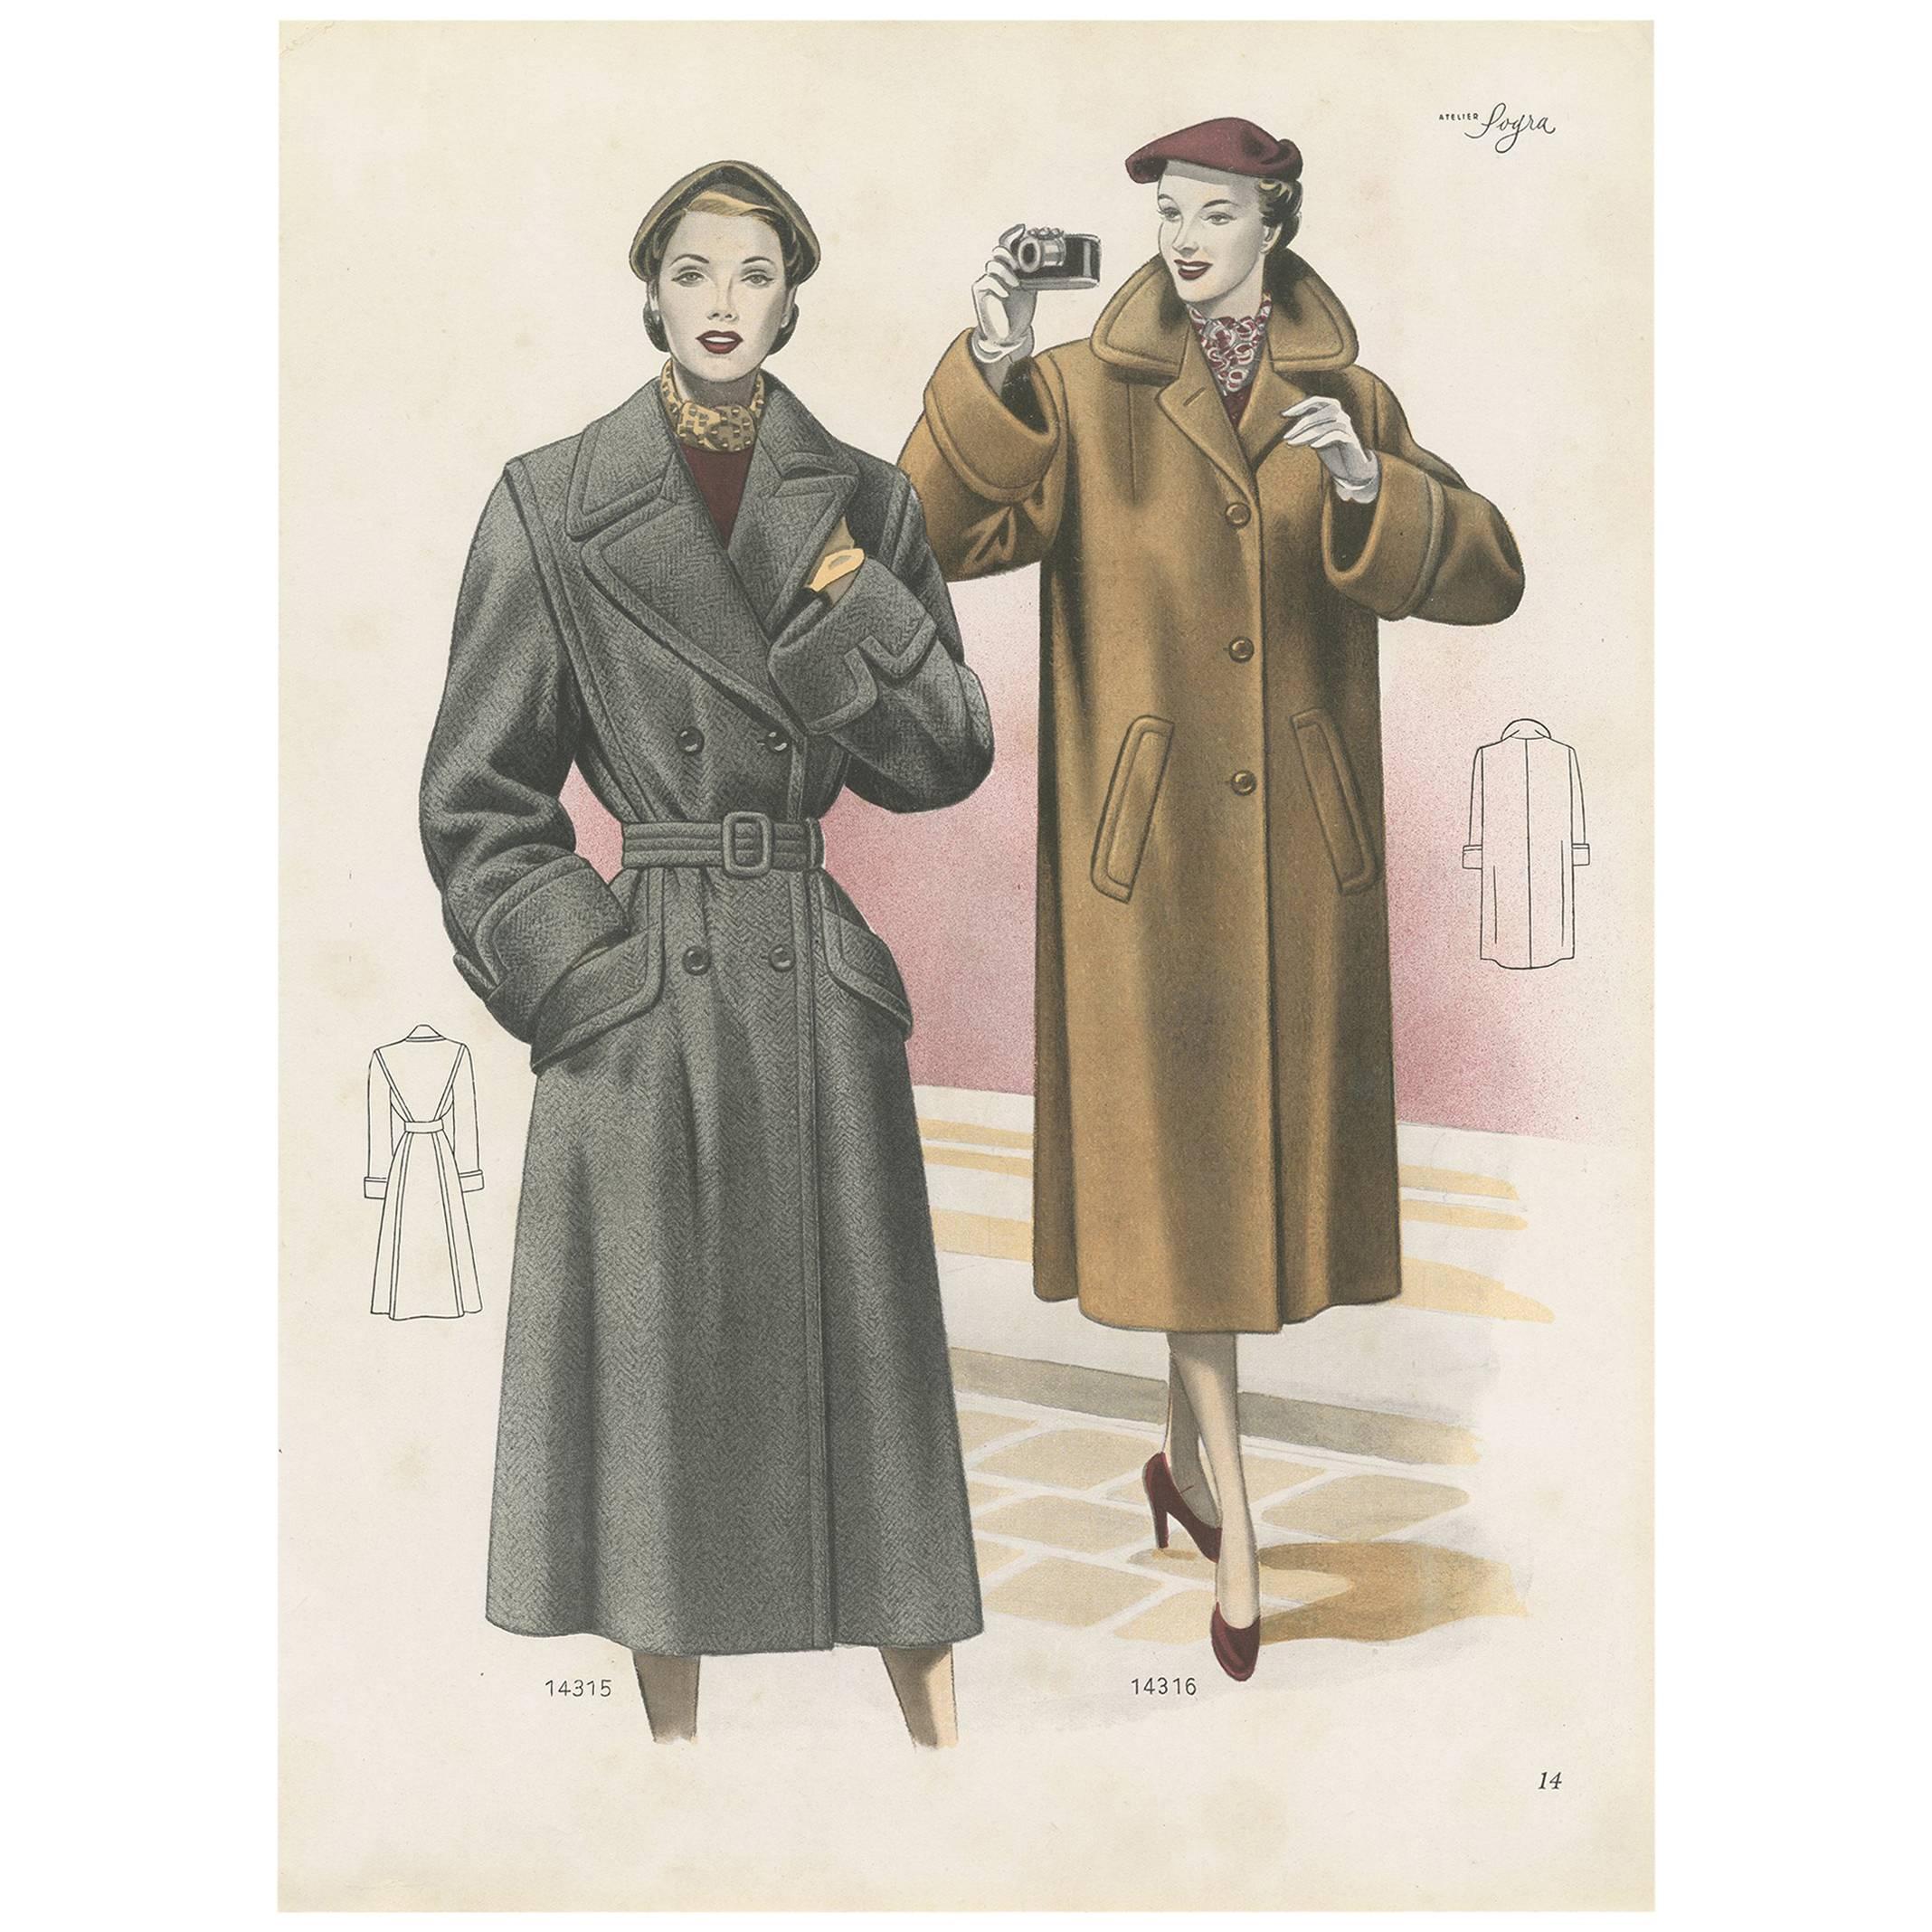 Affiche de mode vintage « pp. 14315 » publiée dans Ladies Styles, 1952